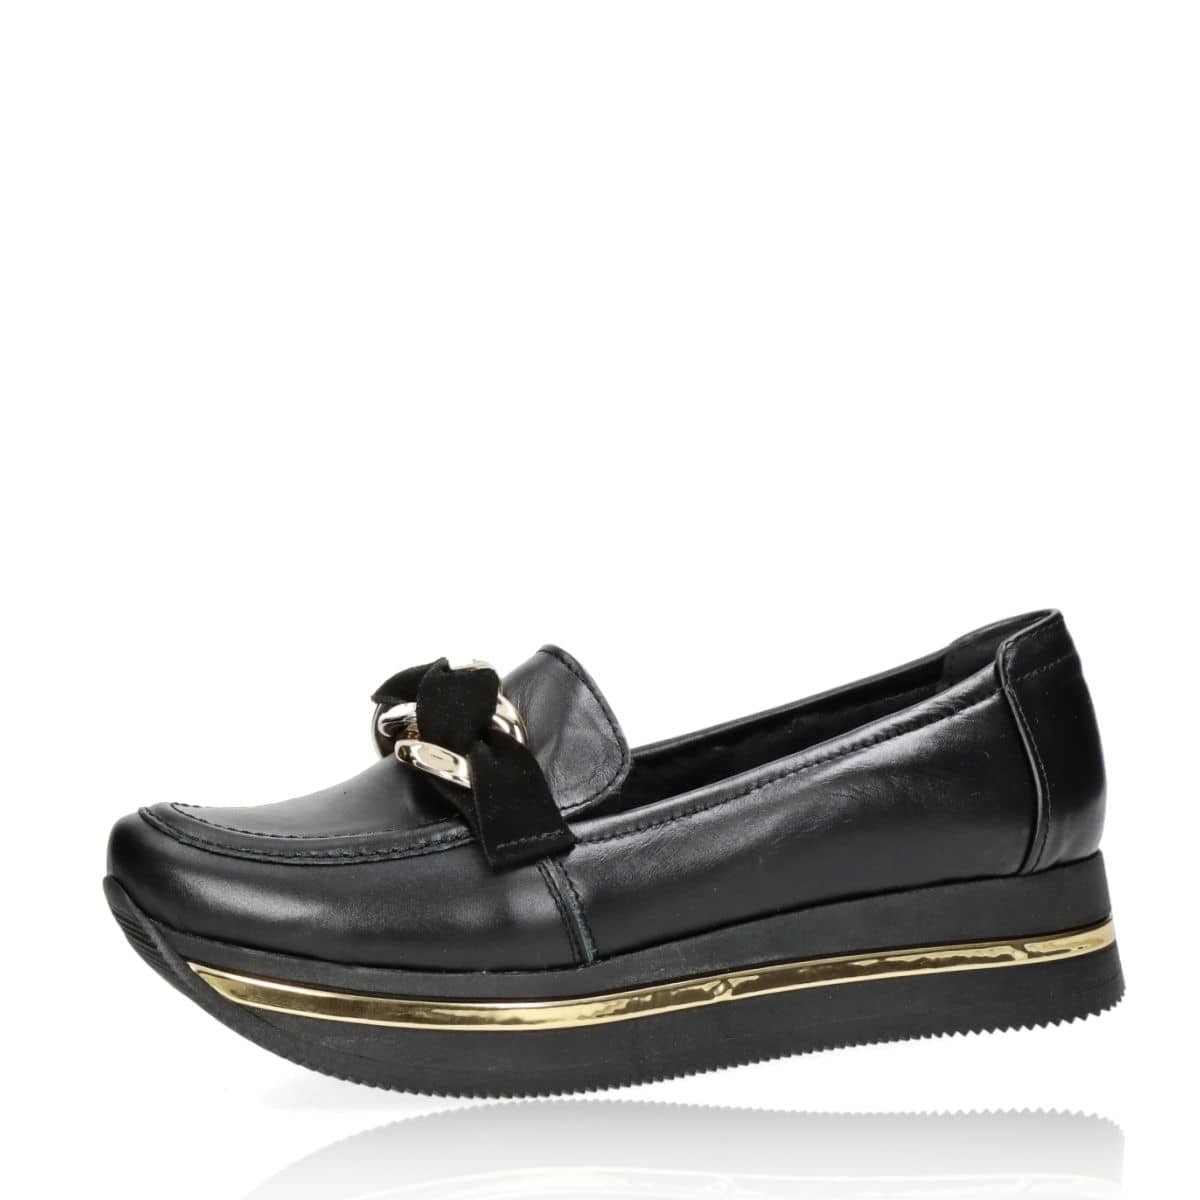 Olivia shoes dámské kožené zateplené polobotky - černé - 36